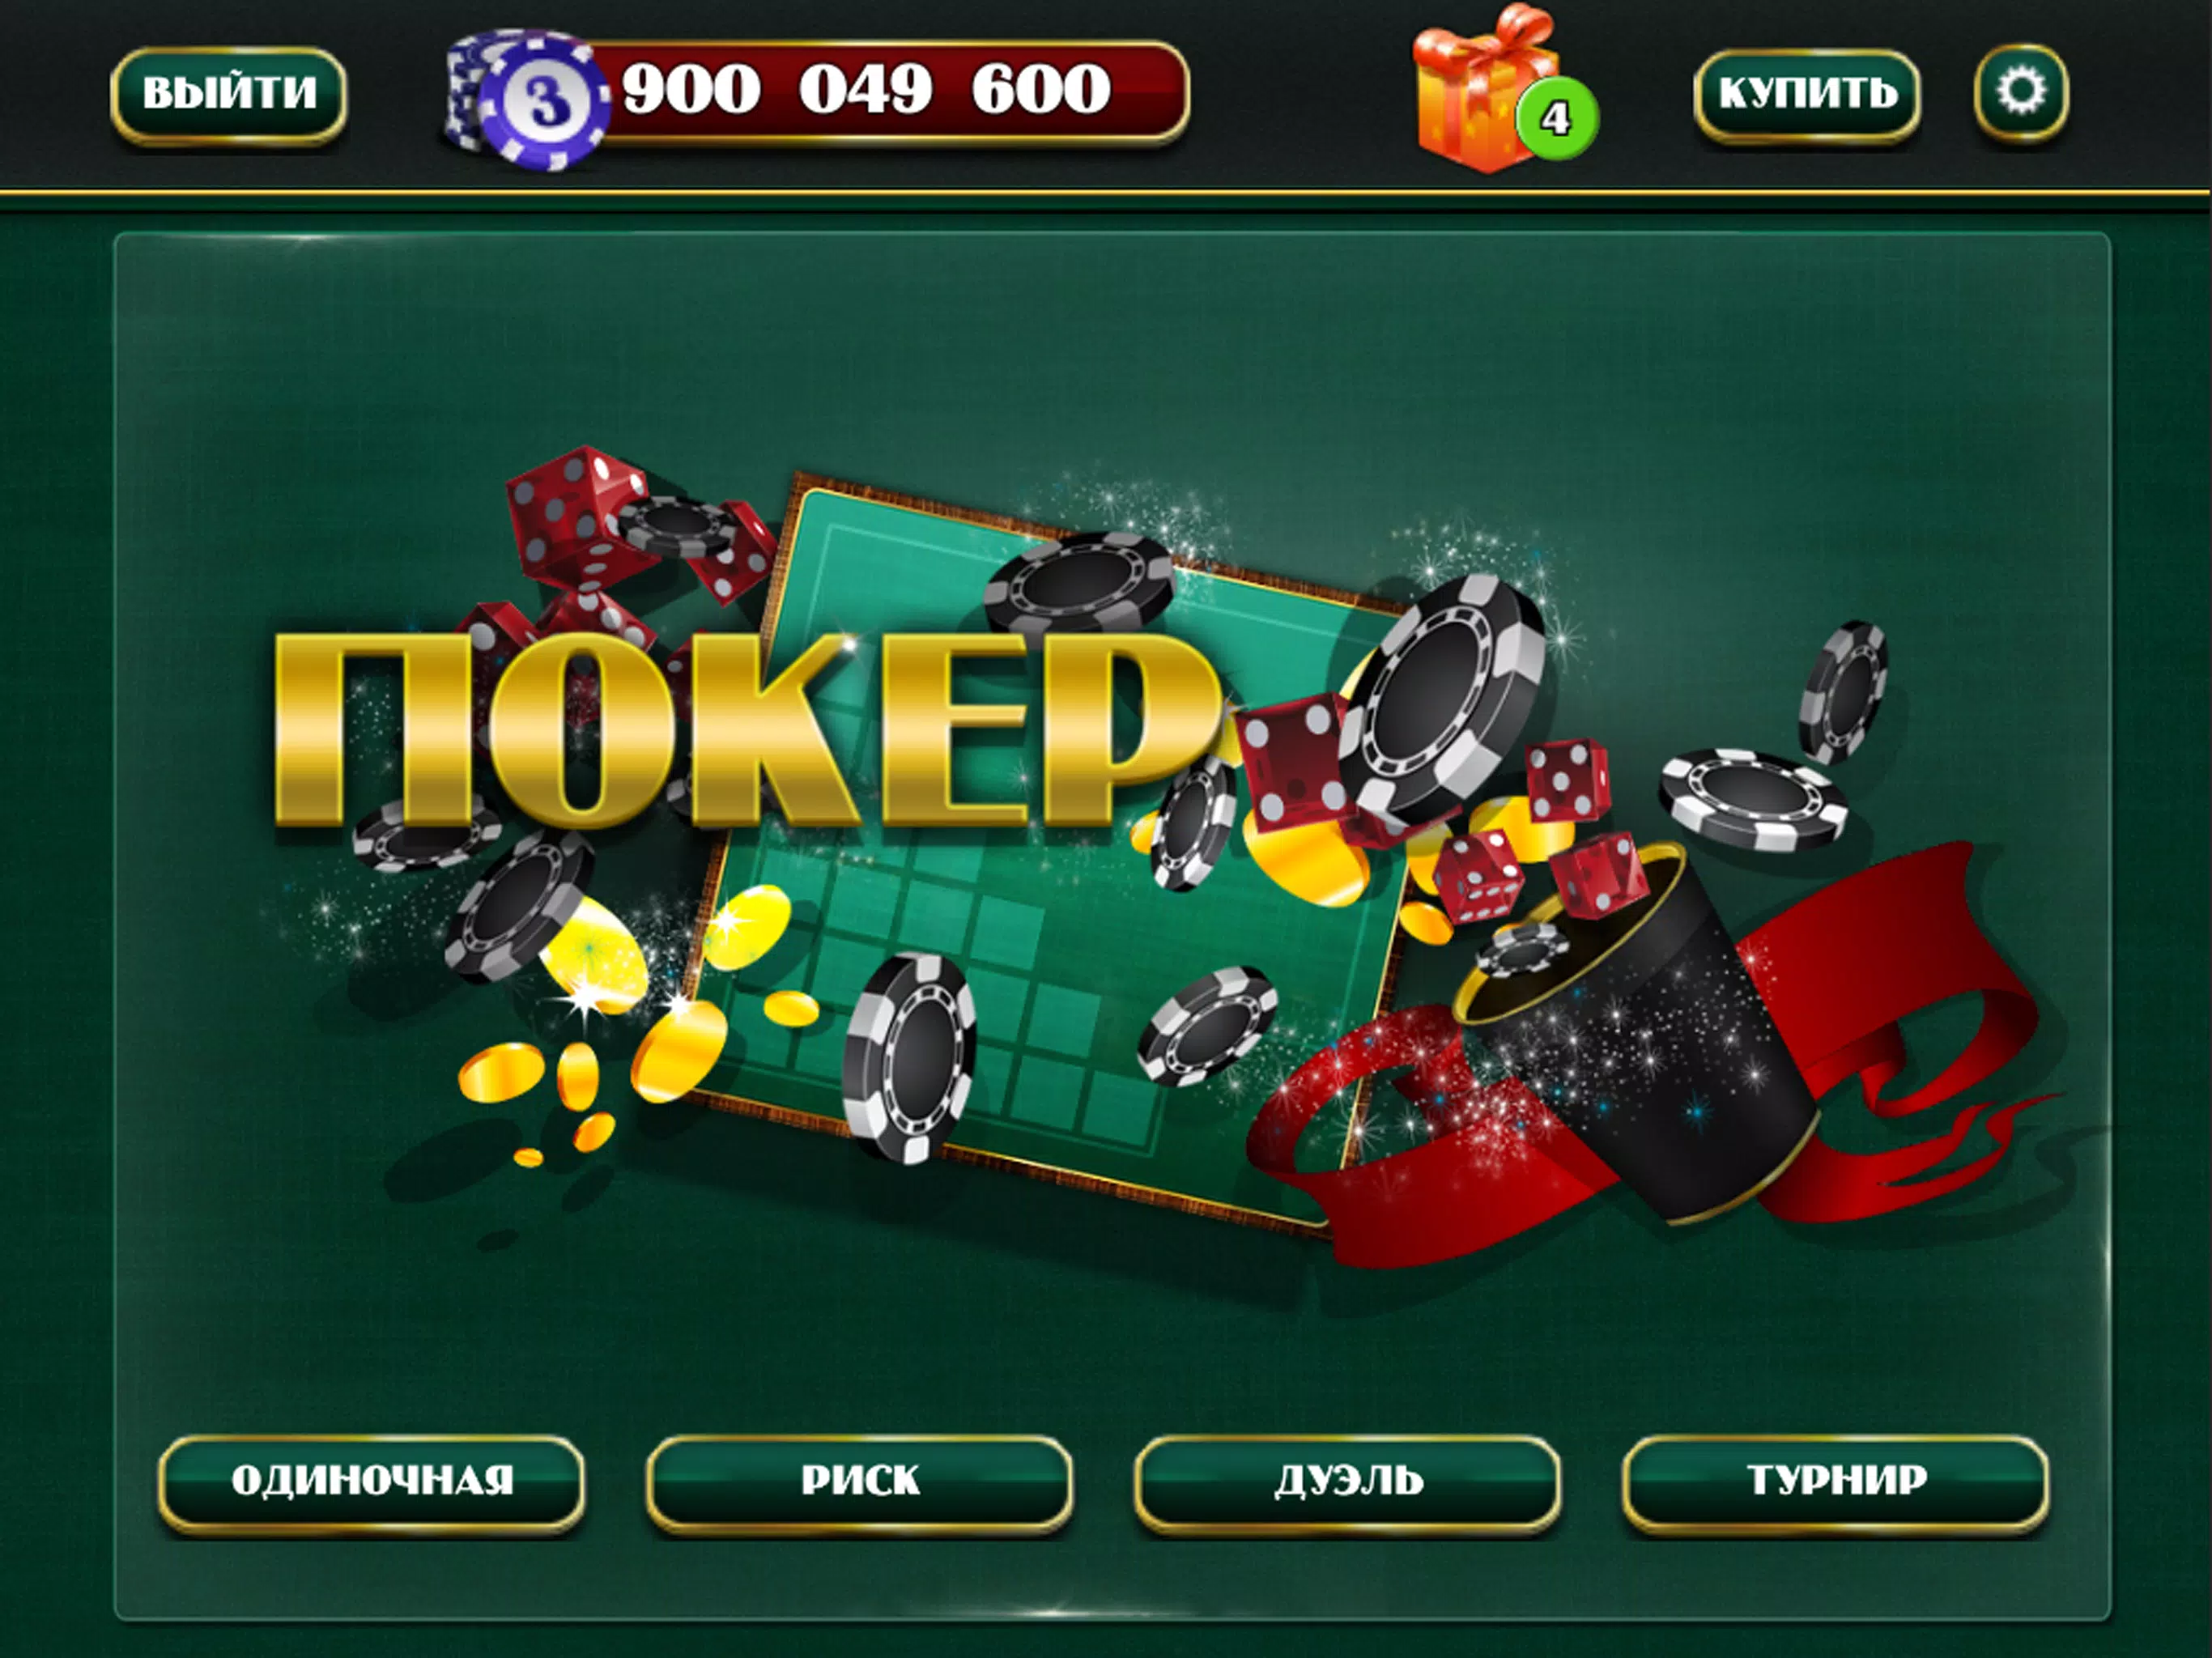 Бесплатный покер на костях онлайн бесплатно игровые автоматы скачать торрент эмуляторы